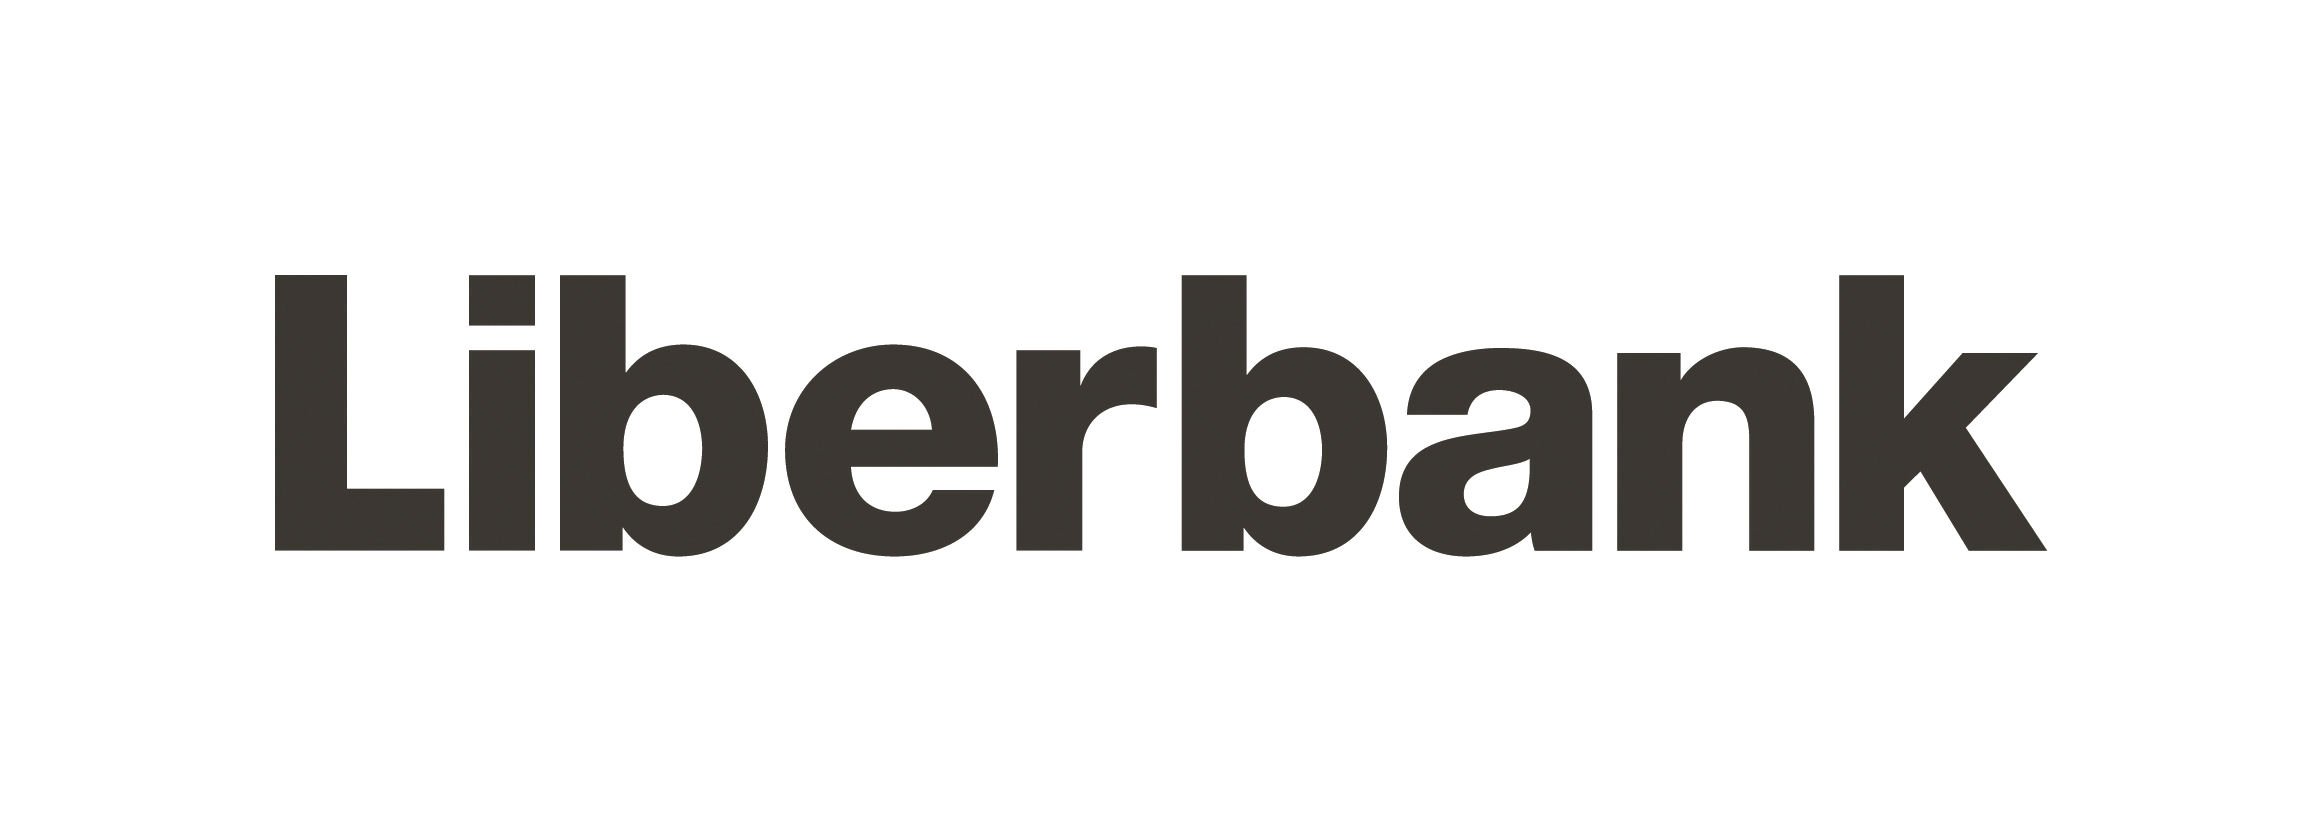 Liberbank gana un 7,7% menos por sus provisiones frente al Covid-19